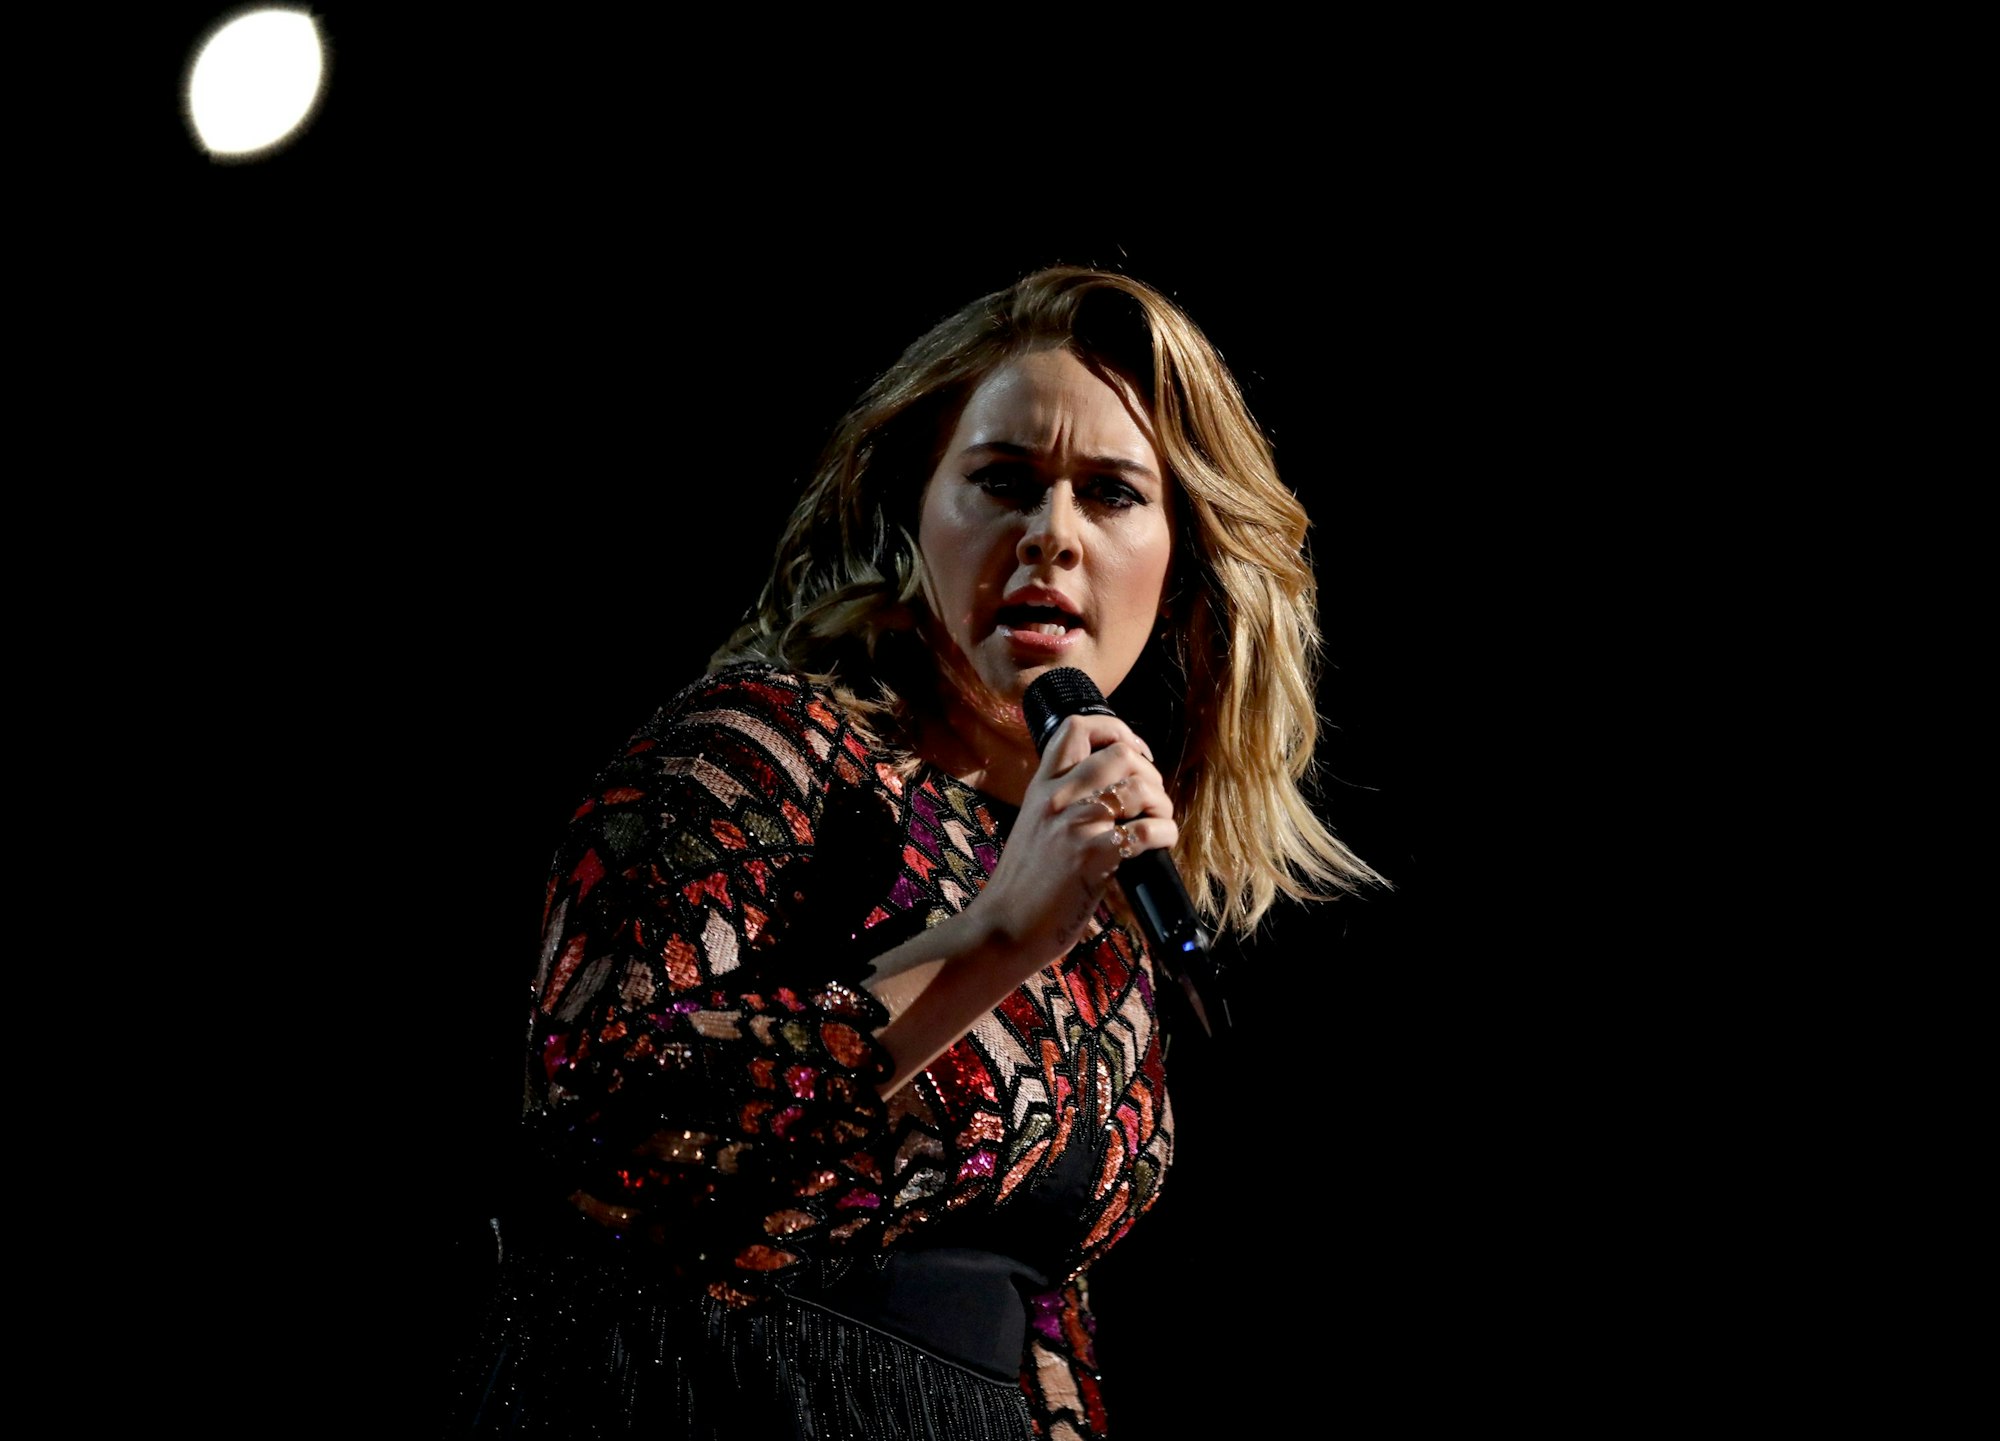 Adele performt ihren Song „Hello“ im Rahmen der Grammy-Awards 2017.